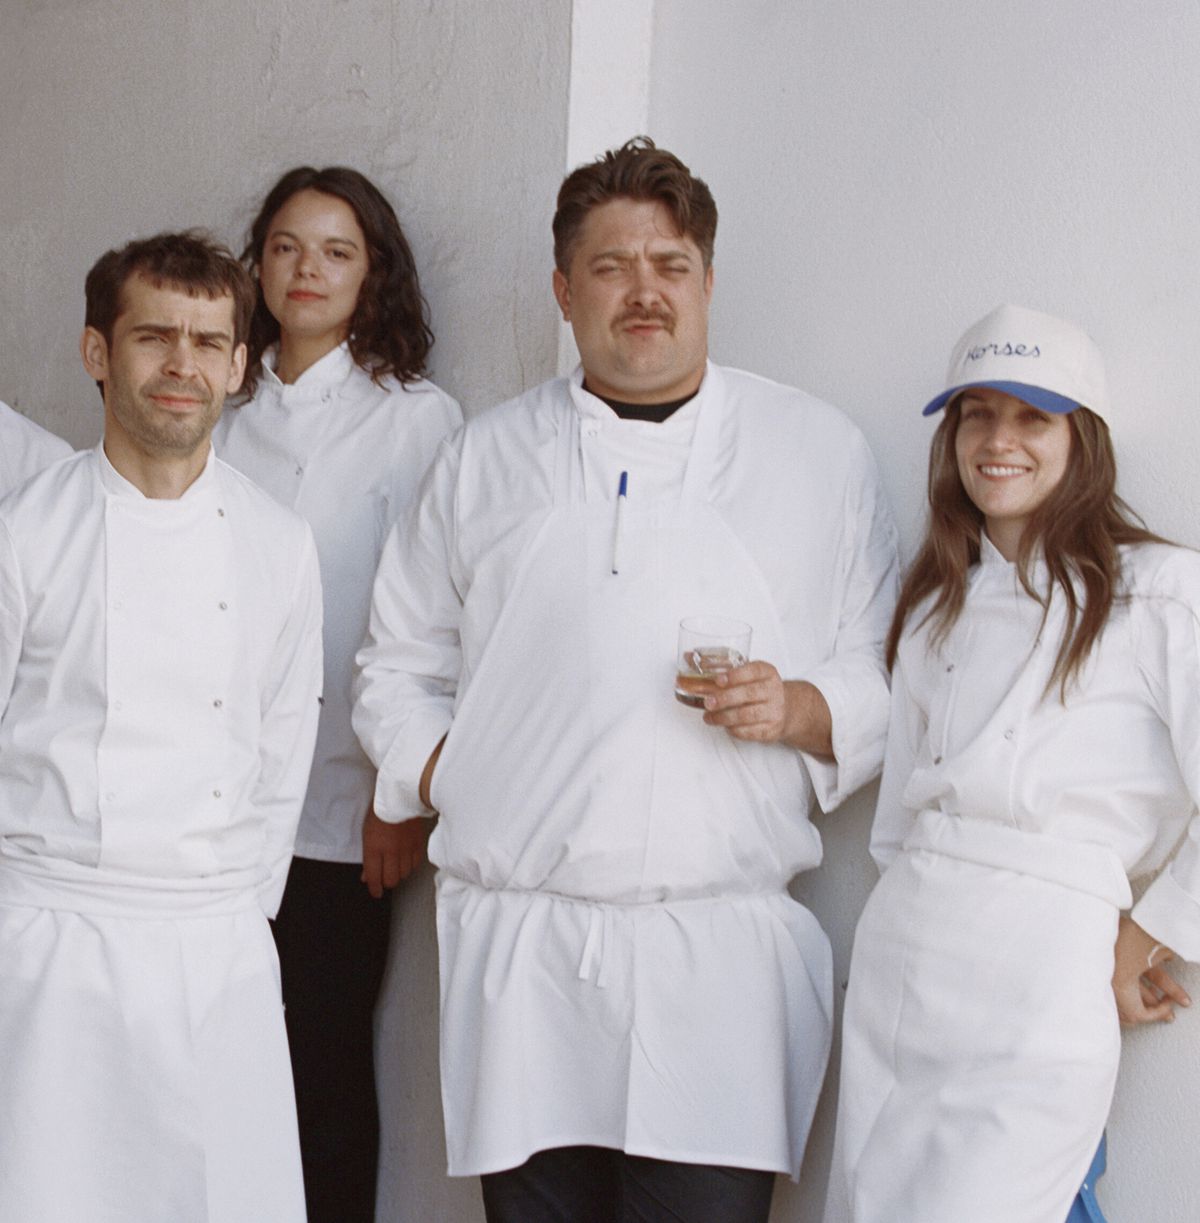 Equipo de chefs de Horses in Hollywood, con el chef-propietario Will Aghajanian en el extremo izquierdo y su esposa/co-chef-propietaria Liz Johnson en el extremo derecho.